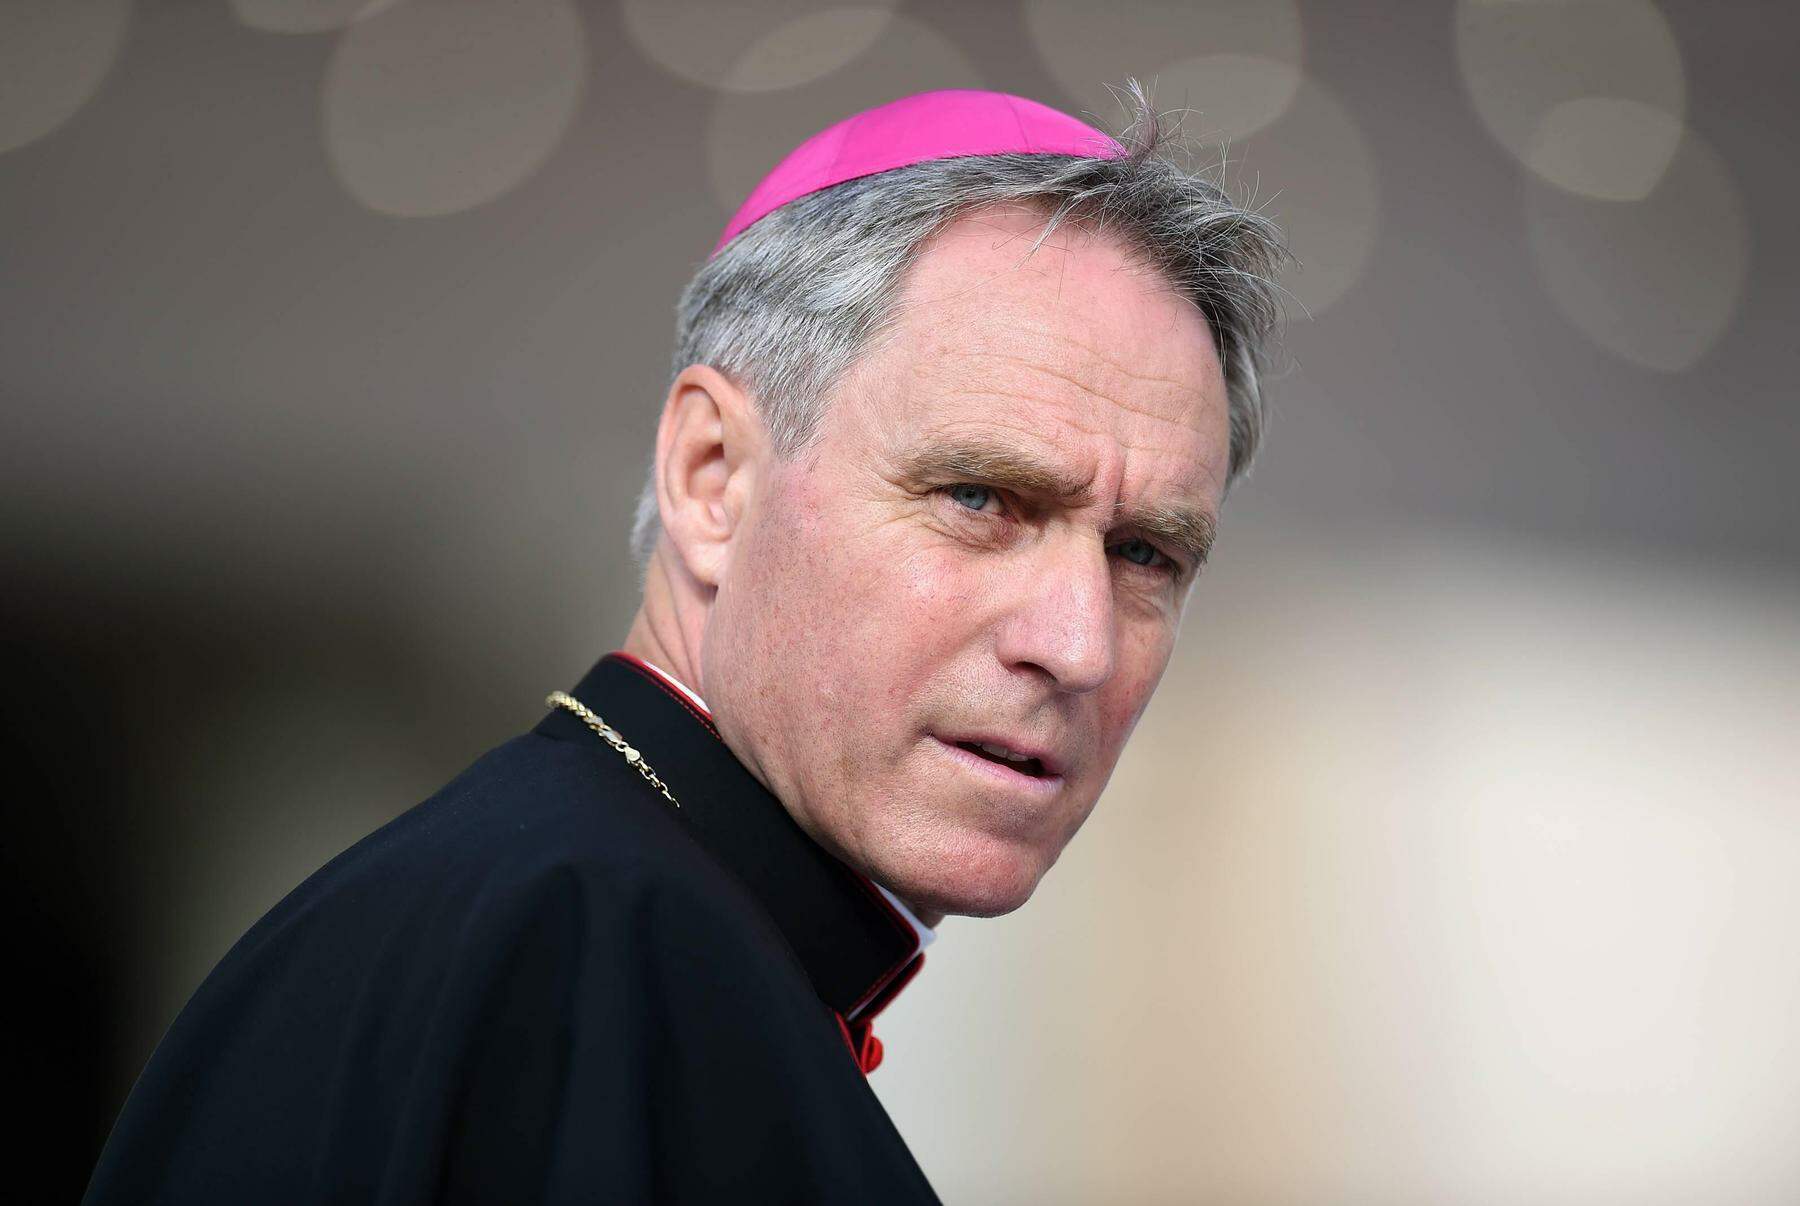 papst will erzbischof gänswein offenbar zum nuntius von litauen machen